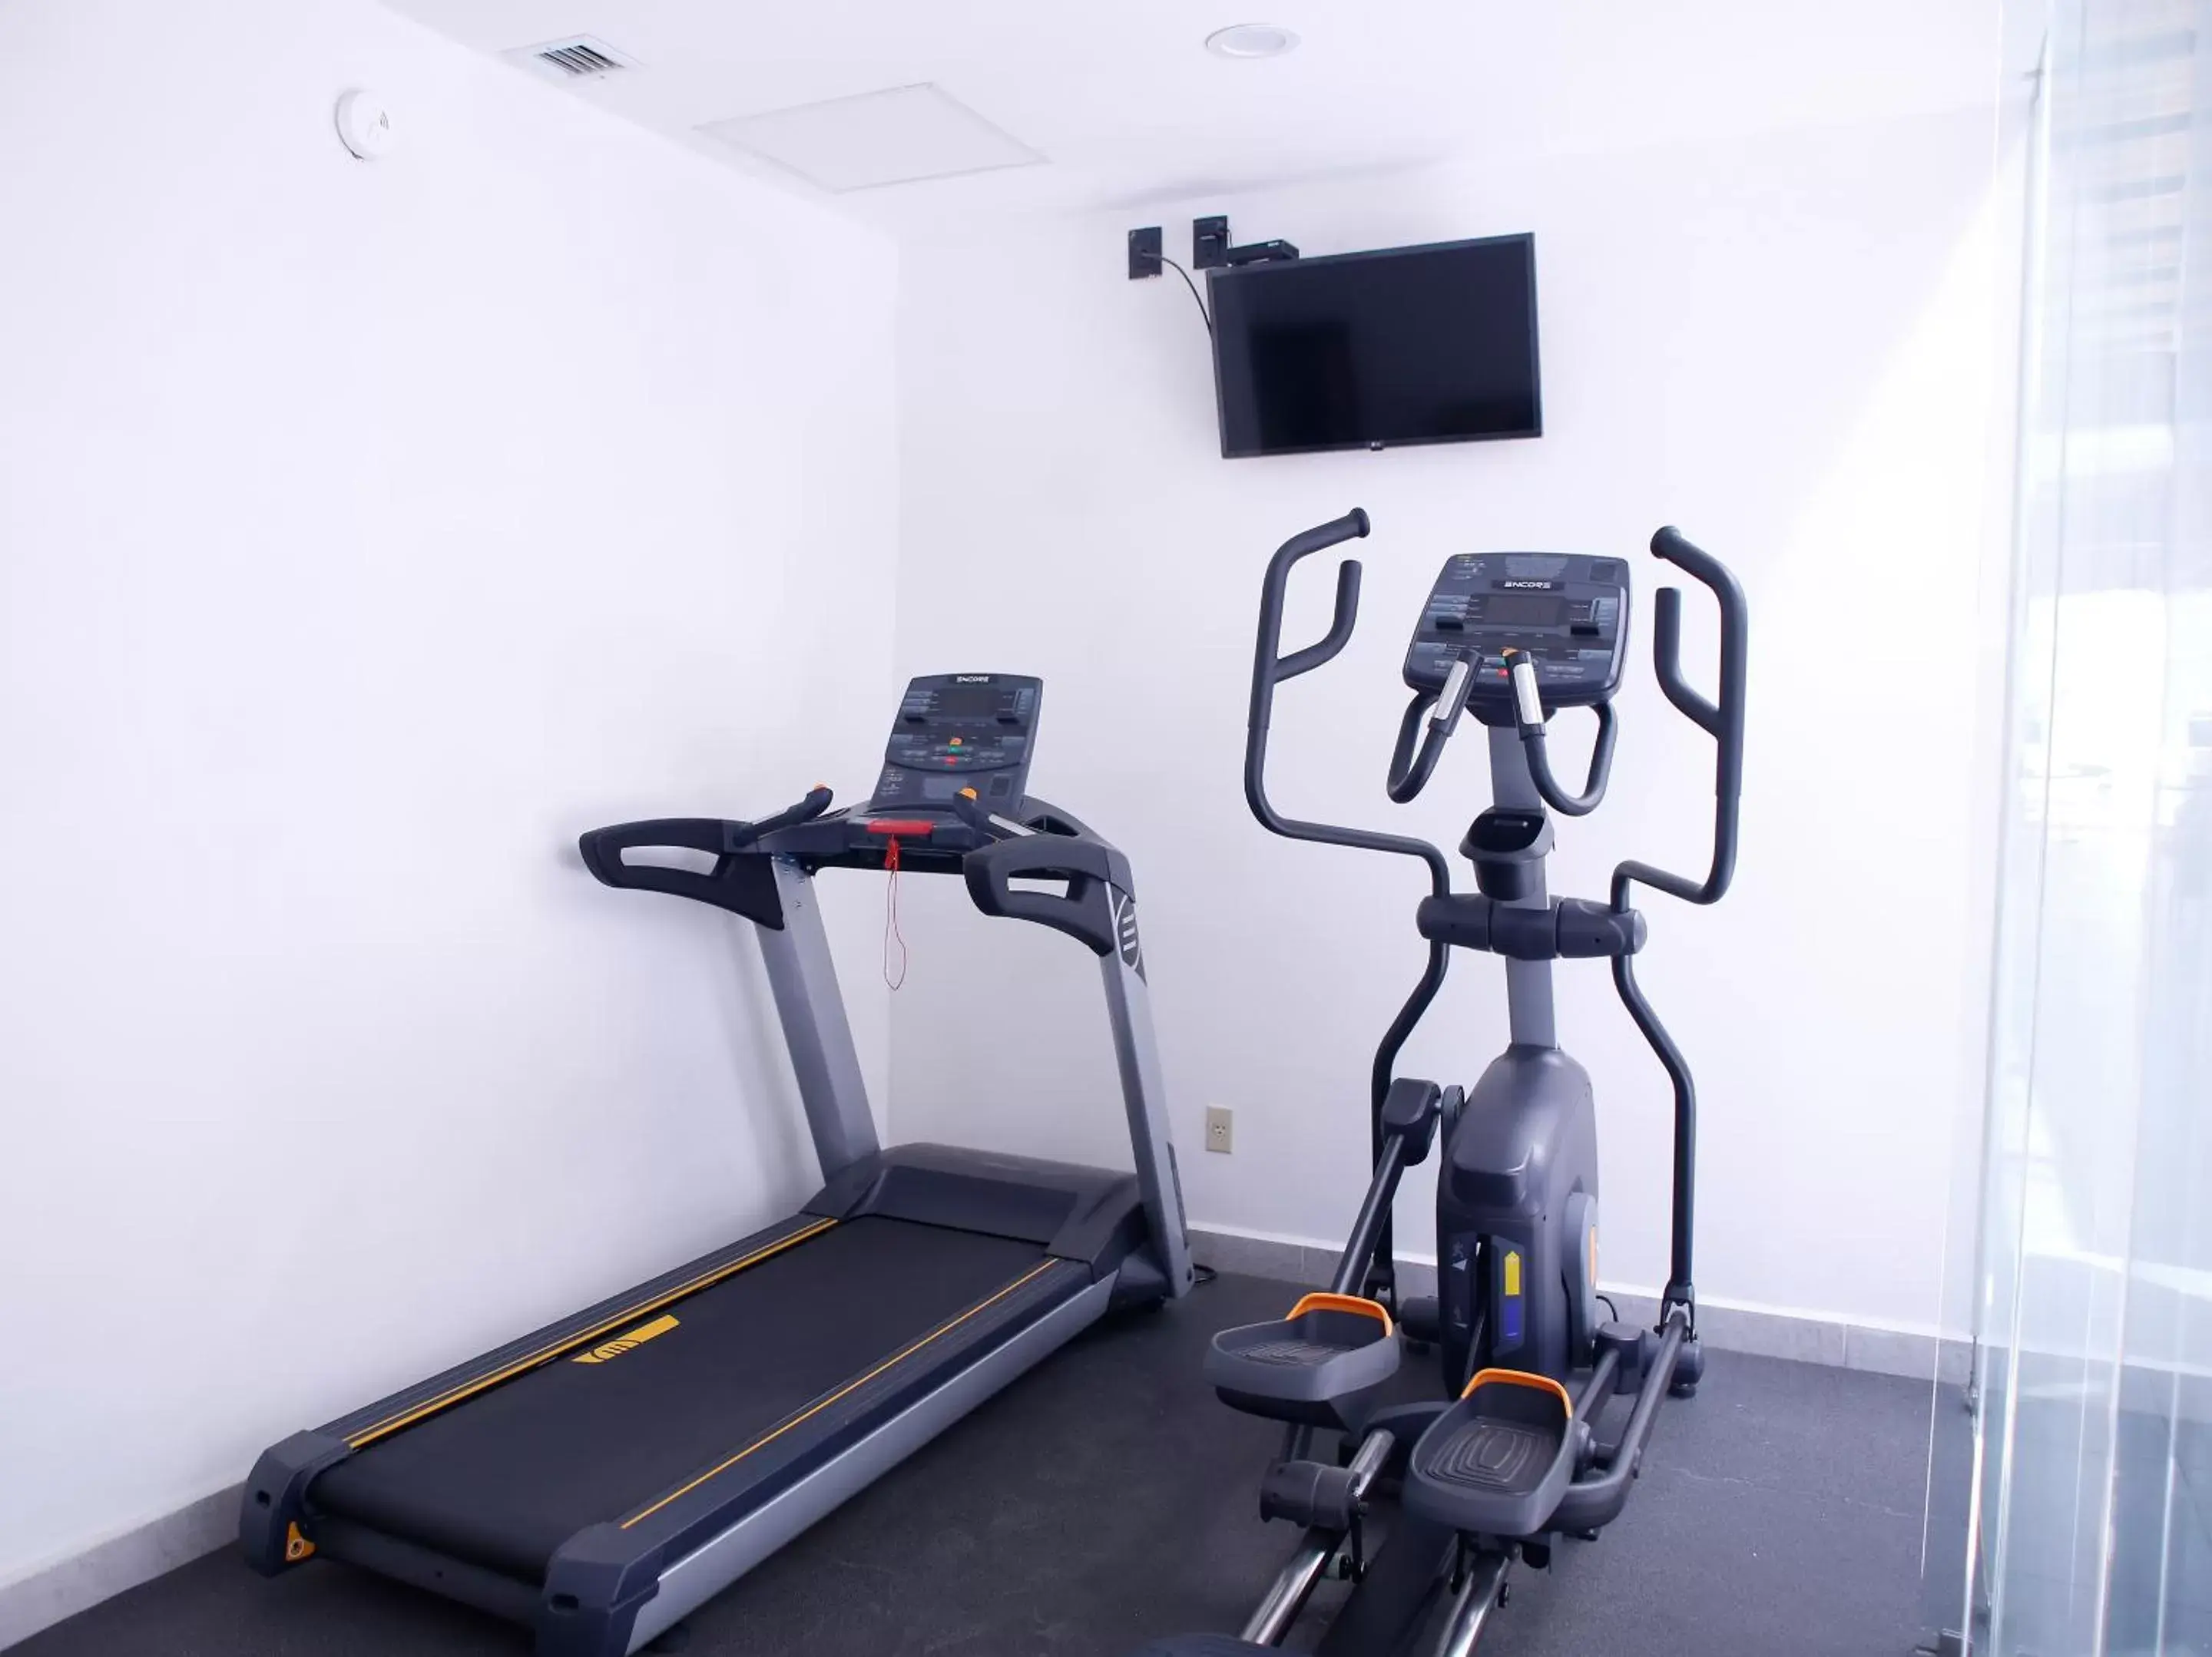 Fitness centre/facilities, Fitness Center/Facilities in Casa de la Luz Hotel Boutique